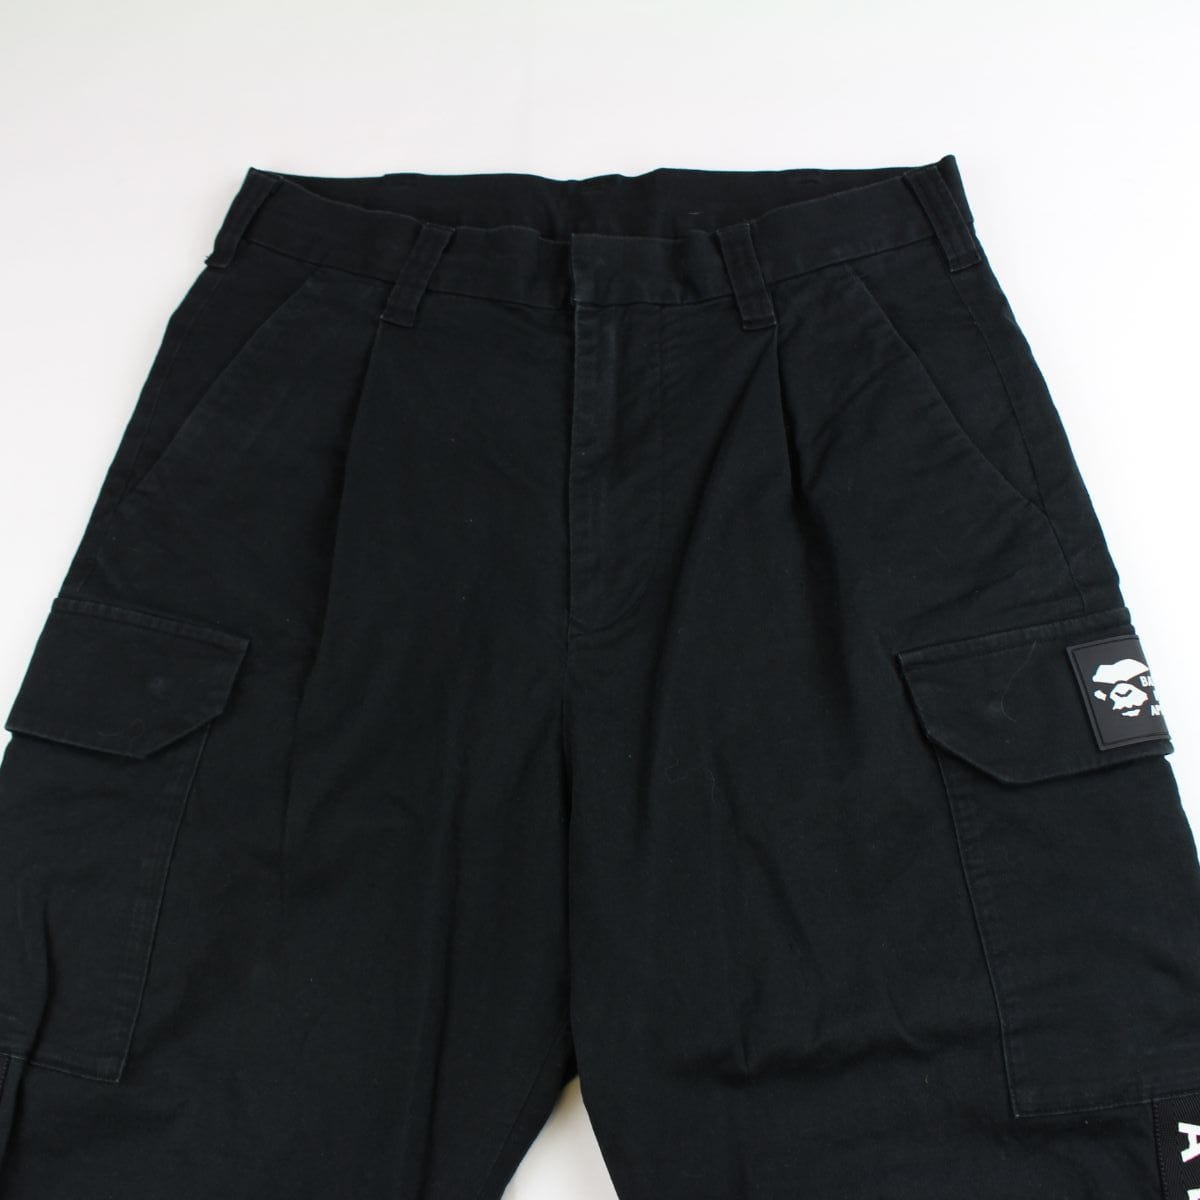 bape black strip cargo pants - SaruGeneral